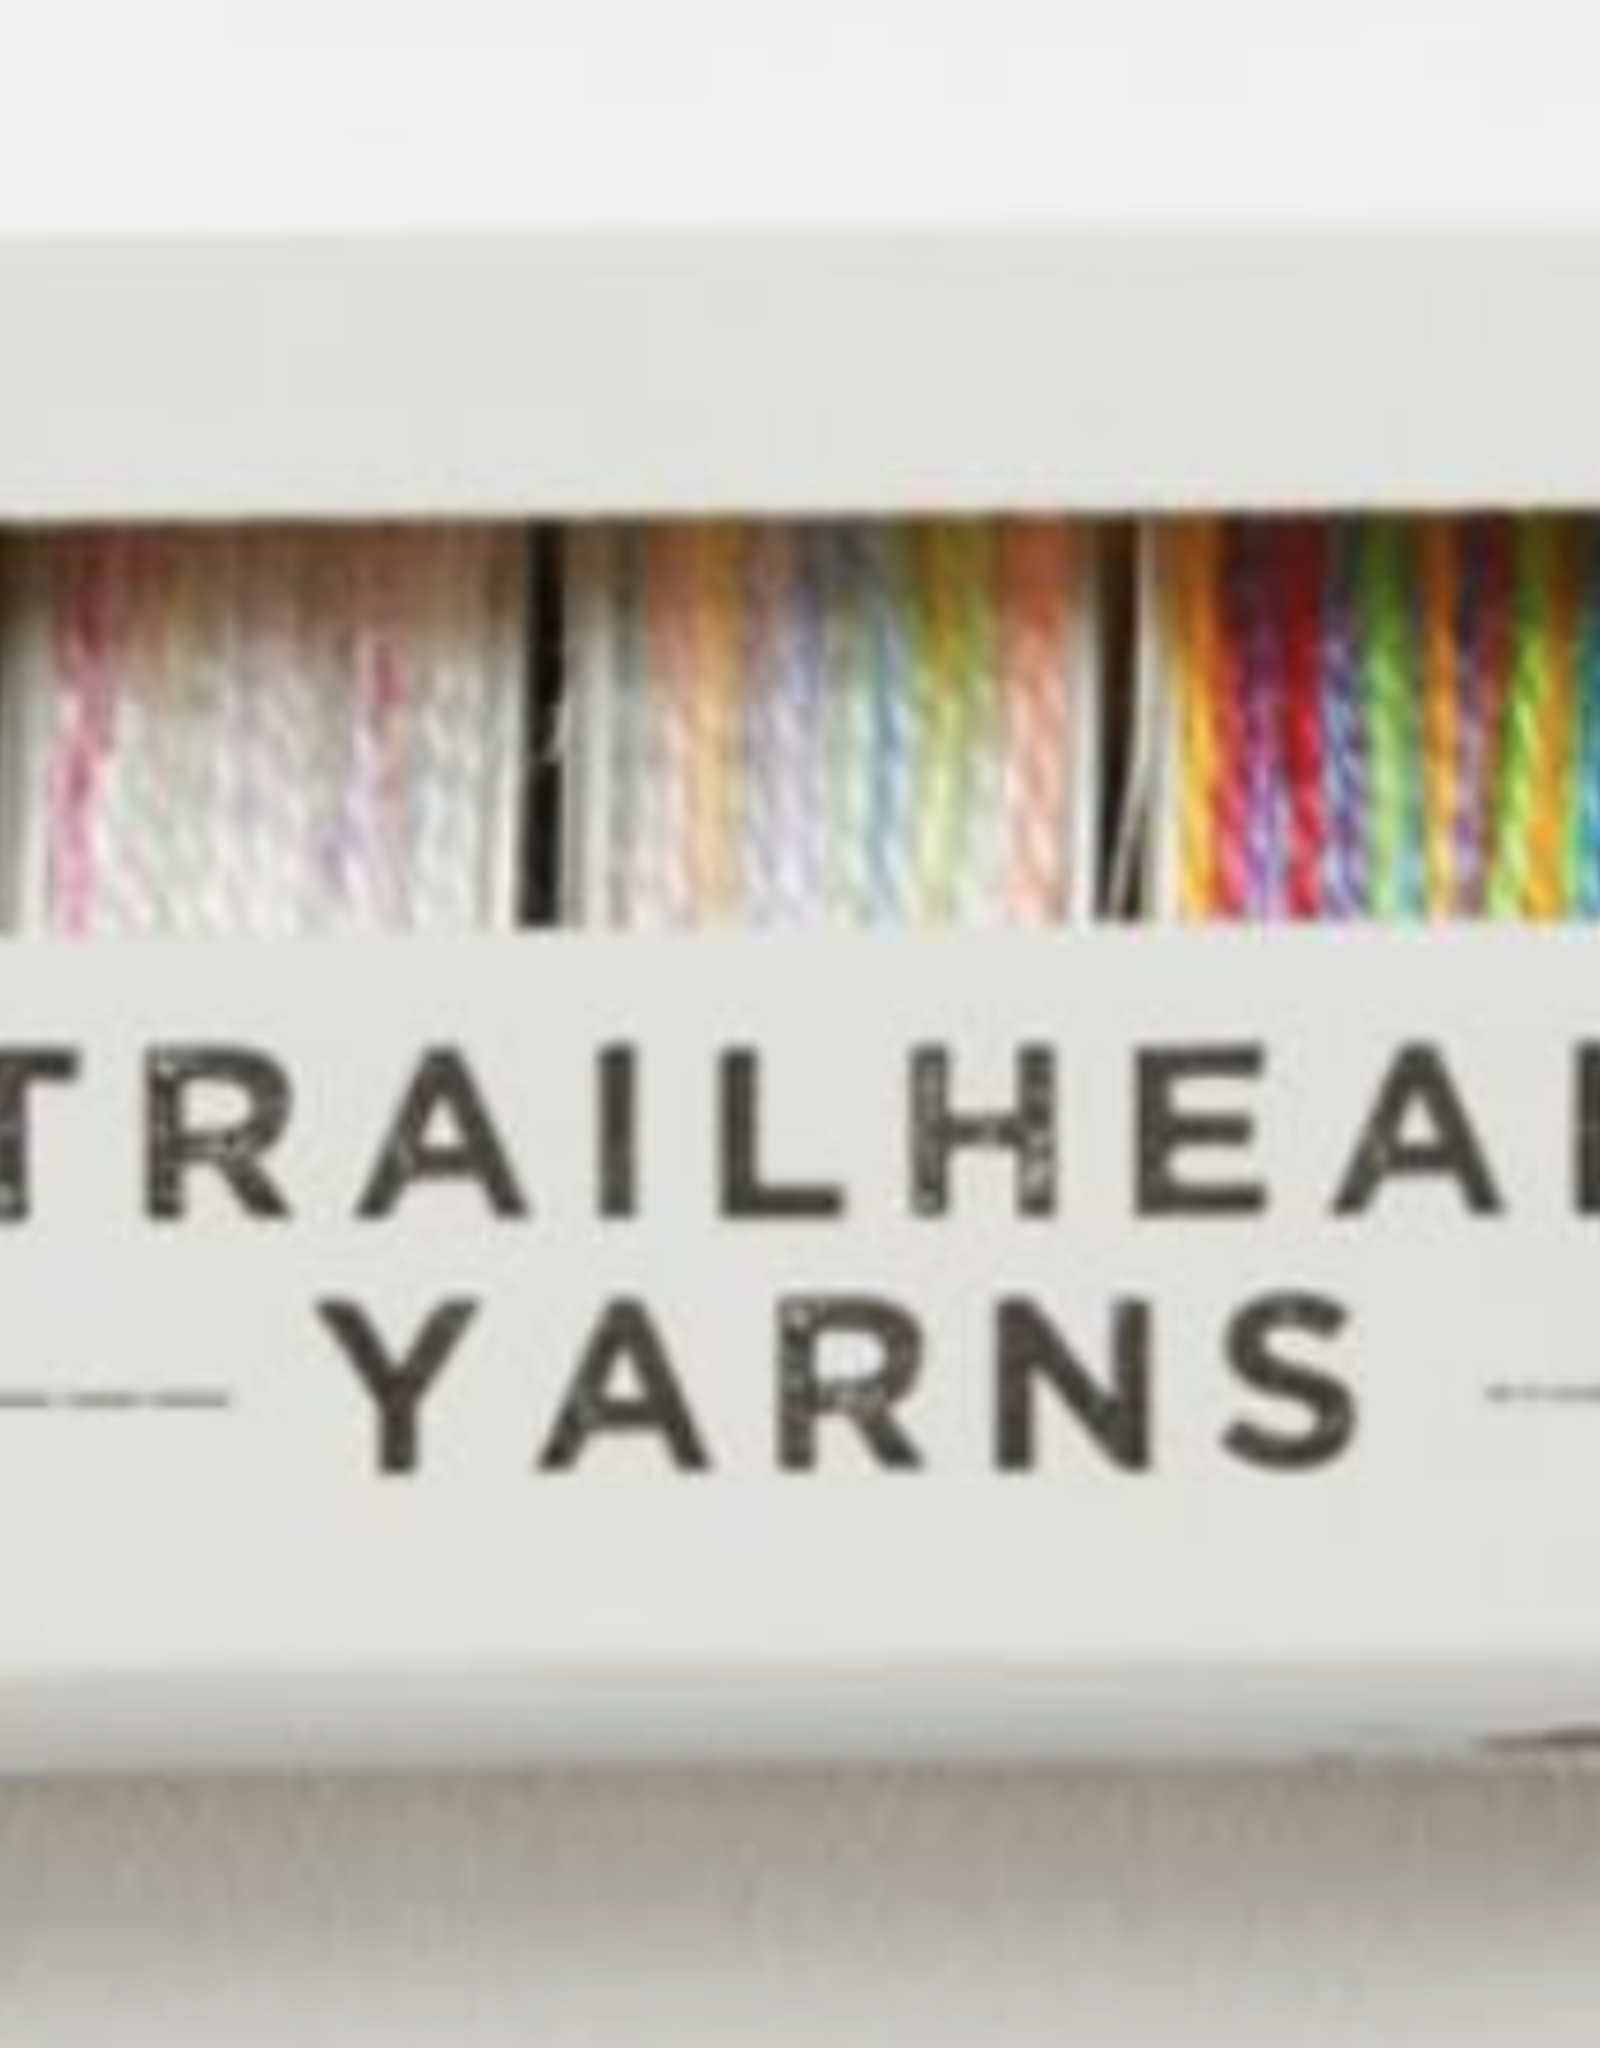 Trailhead Yarns Acorn Bobbins by Trailhead Yarns